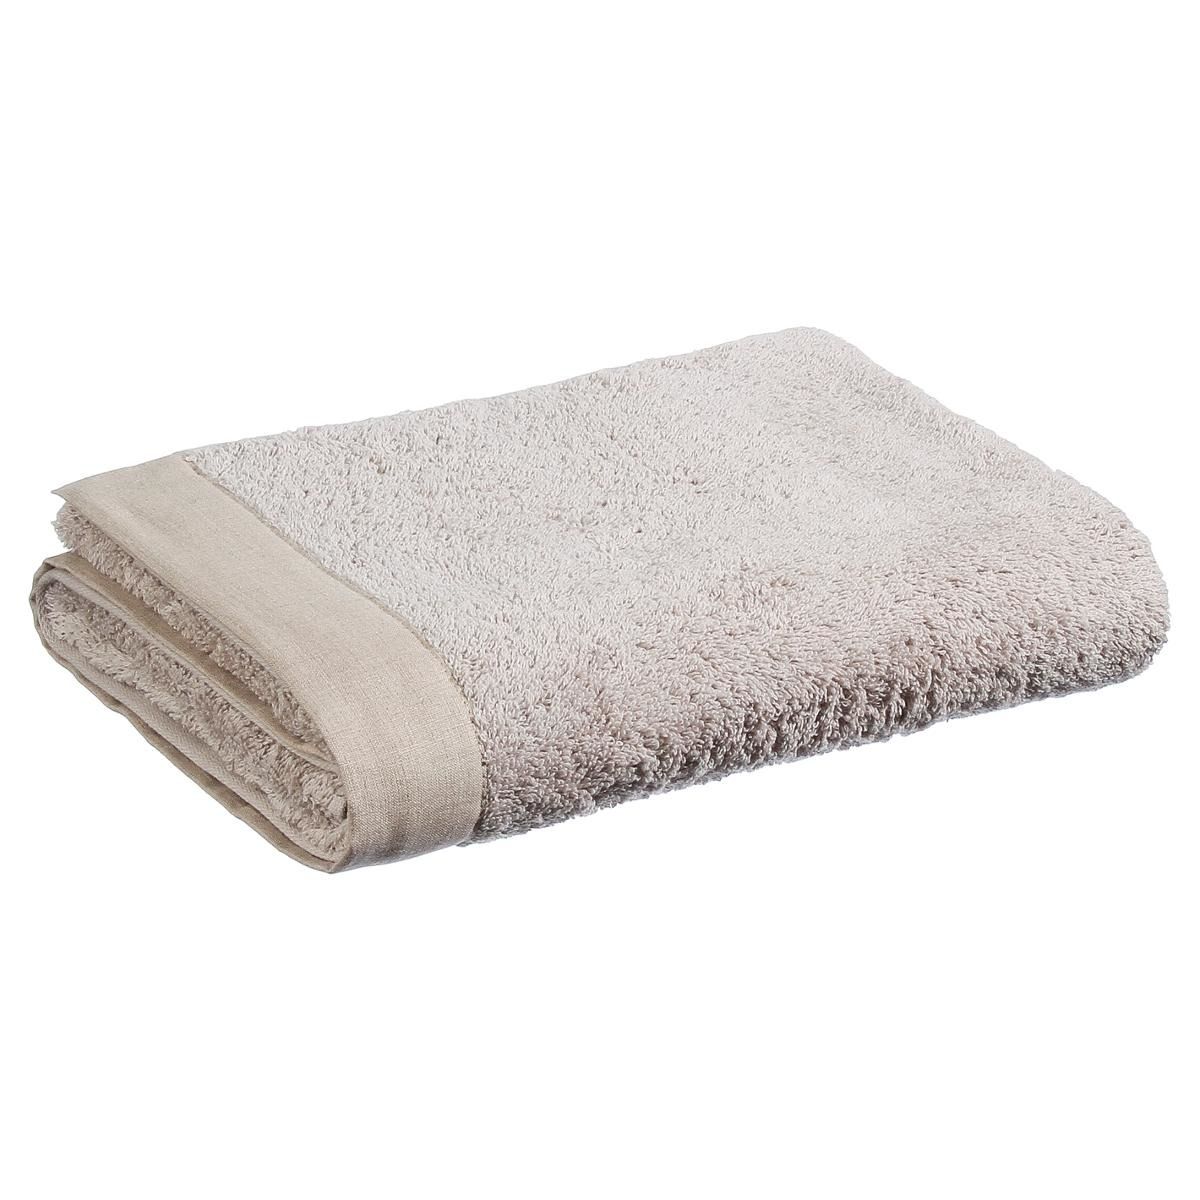 Emako Ručník, béžový ručník, bavlněný ručník - béžová barva, 130 x 70 cm - EMAKO.CZ s.r.o.